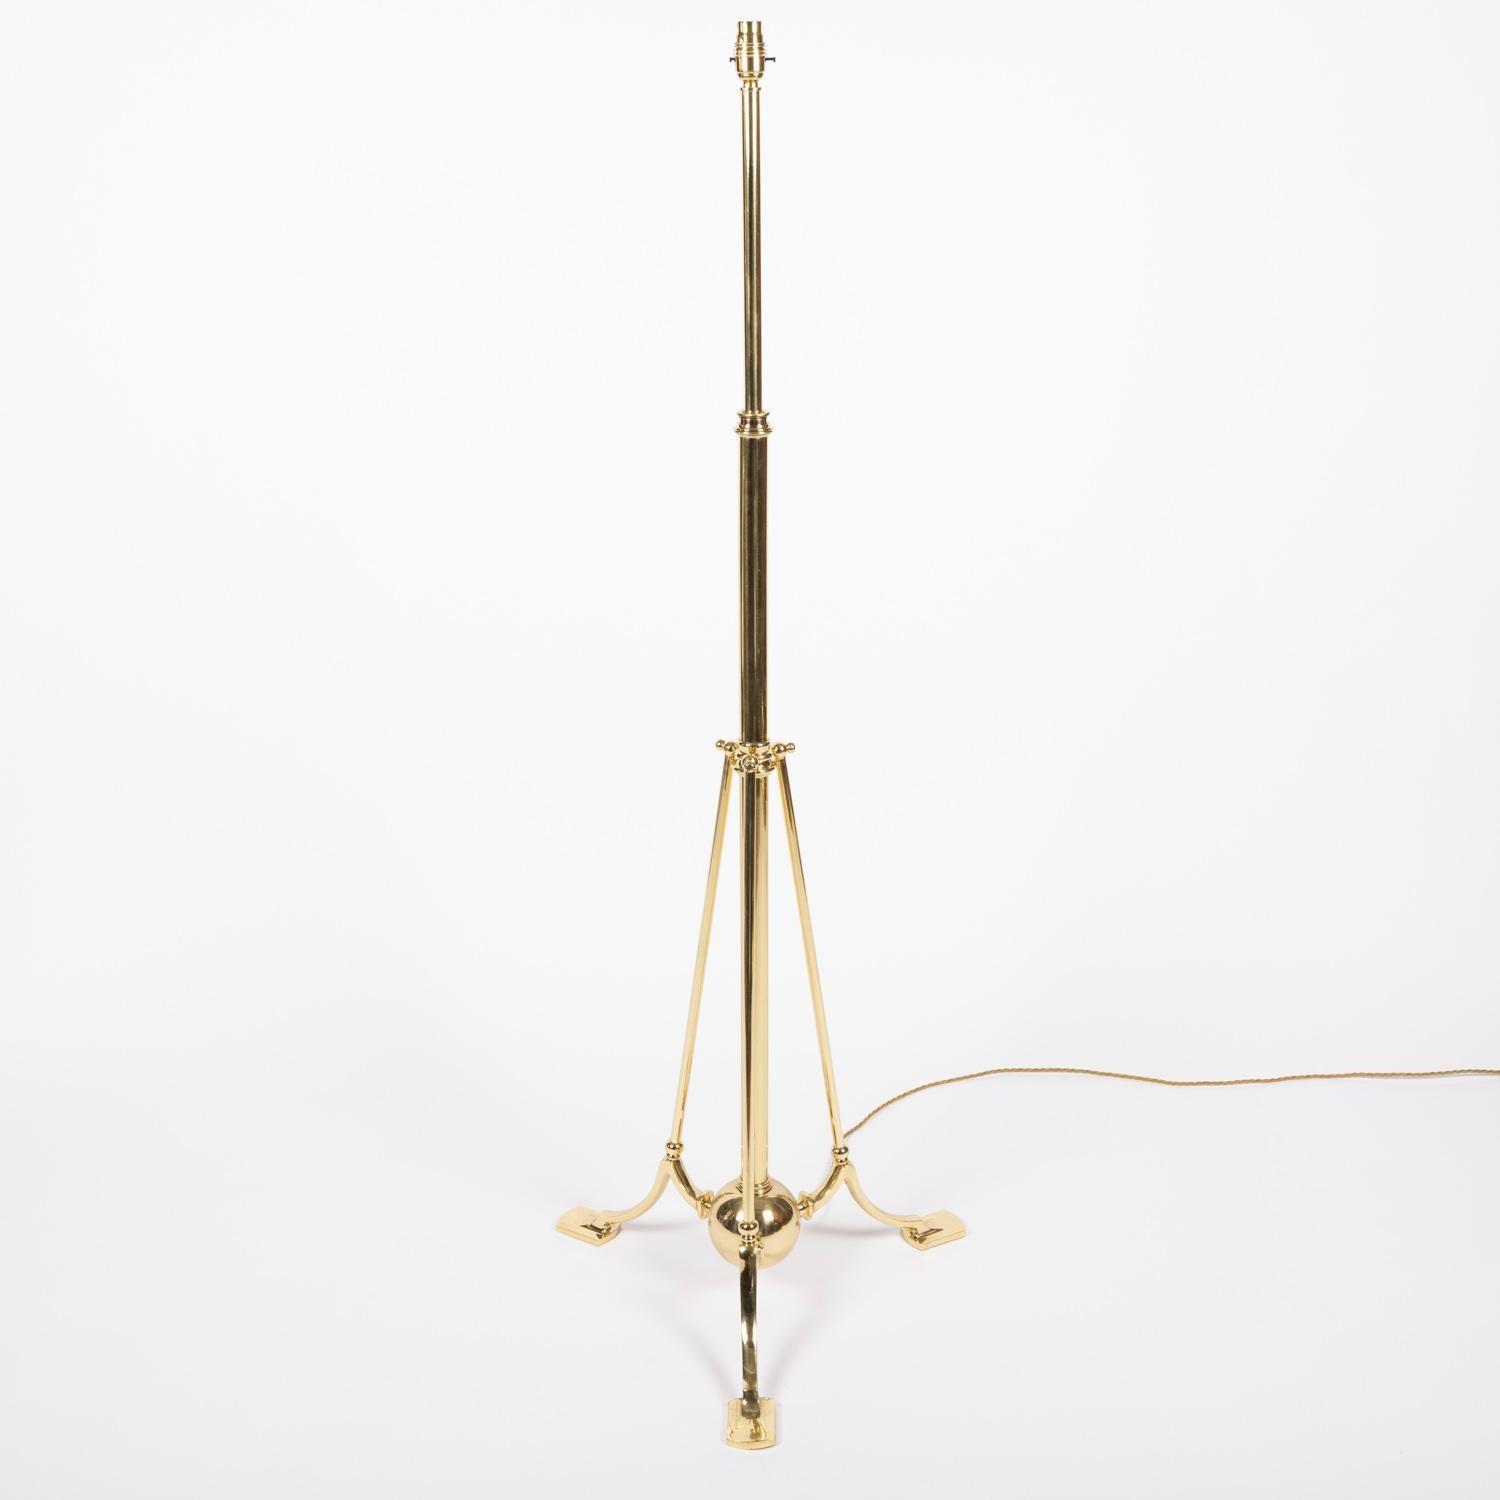 Lampe télescopique en laiton, base tripode, avec poids à bille, à la manière de W.A.S Benson. vers 1900.

Hauteur en photos : 56 pouces / 142 cm. (hauteur réglable).

Recâblé et testé.